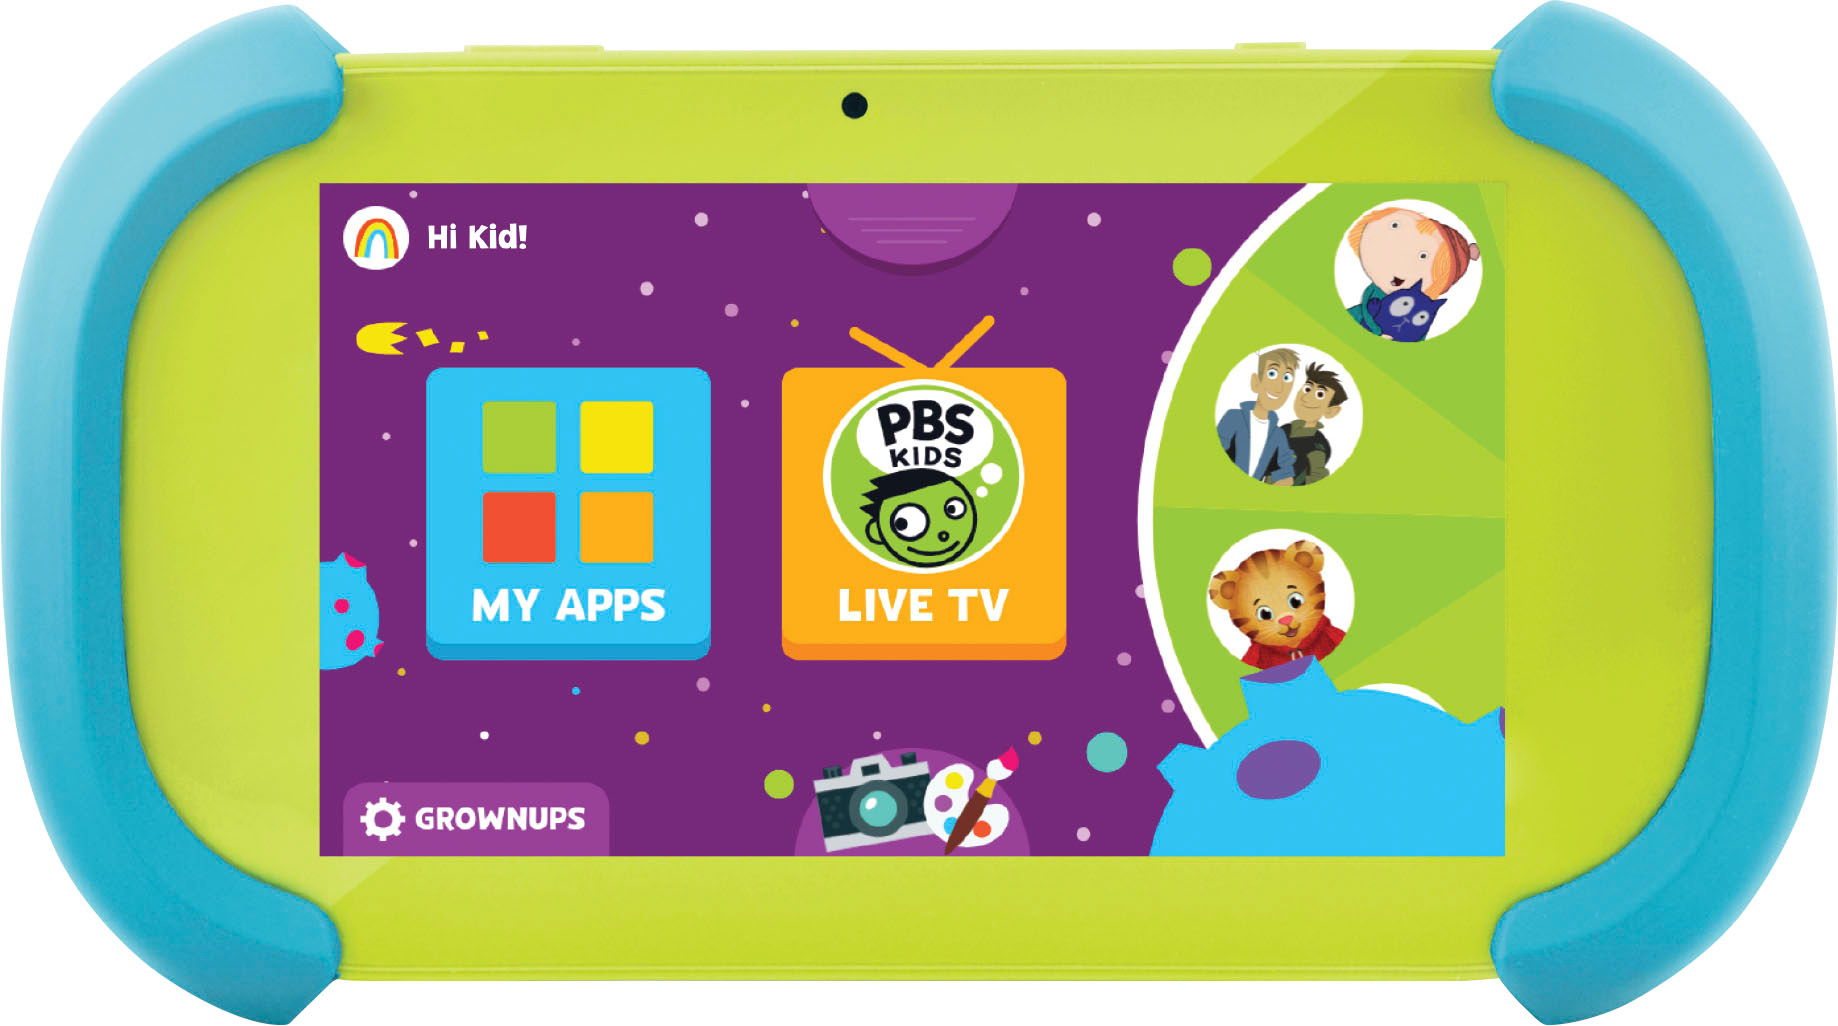 PBS Kids Playtime Pad 7 Kid Safe Tablet Multi PBSKD12B/ PBSKD7200C - Best  Buy